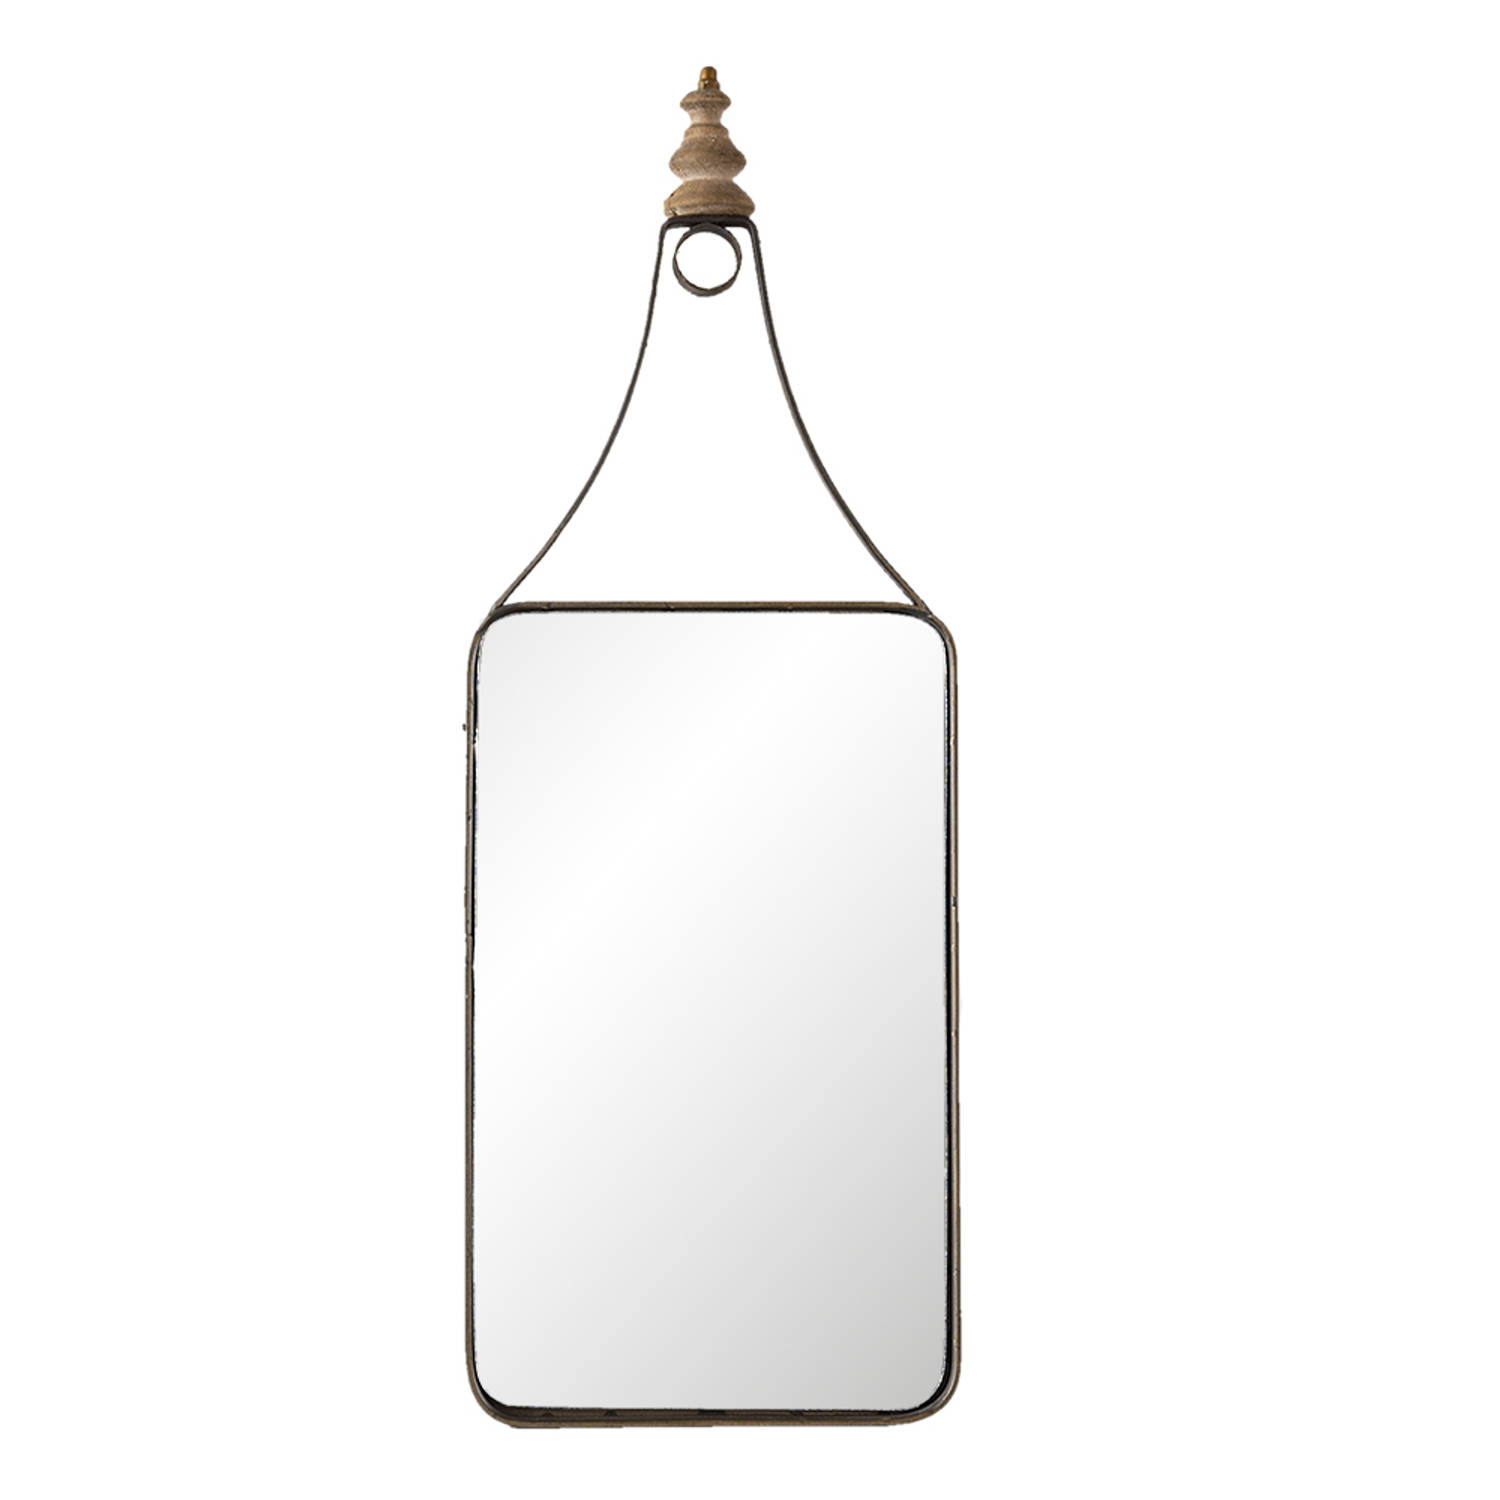 HAES DECO - Rechthoekige Spiegel - Kleur Bruin - Formaat 18x1x52 cm - Materiaal Metaal / Glas - Wandspiegel, Spiegel Rechthoek